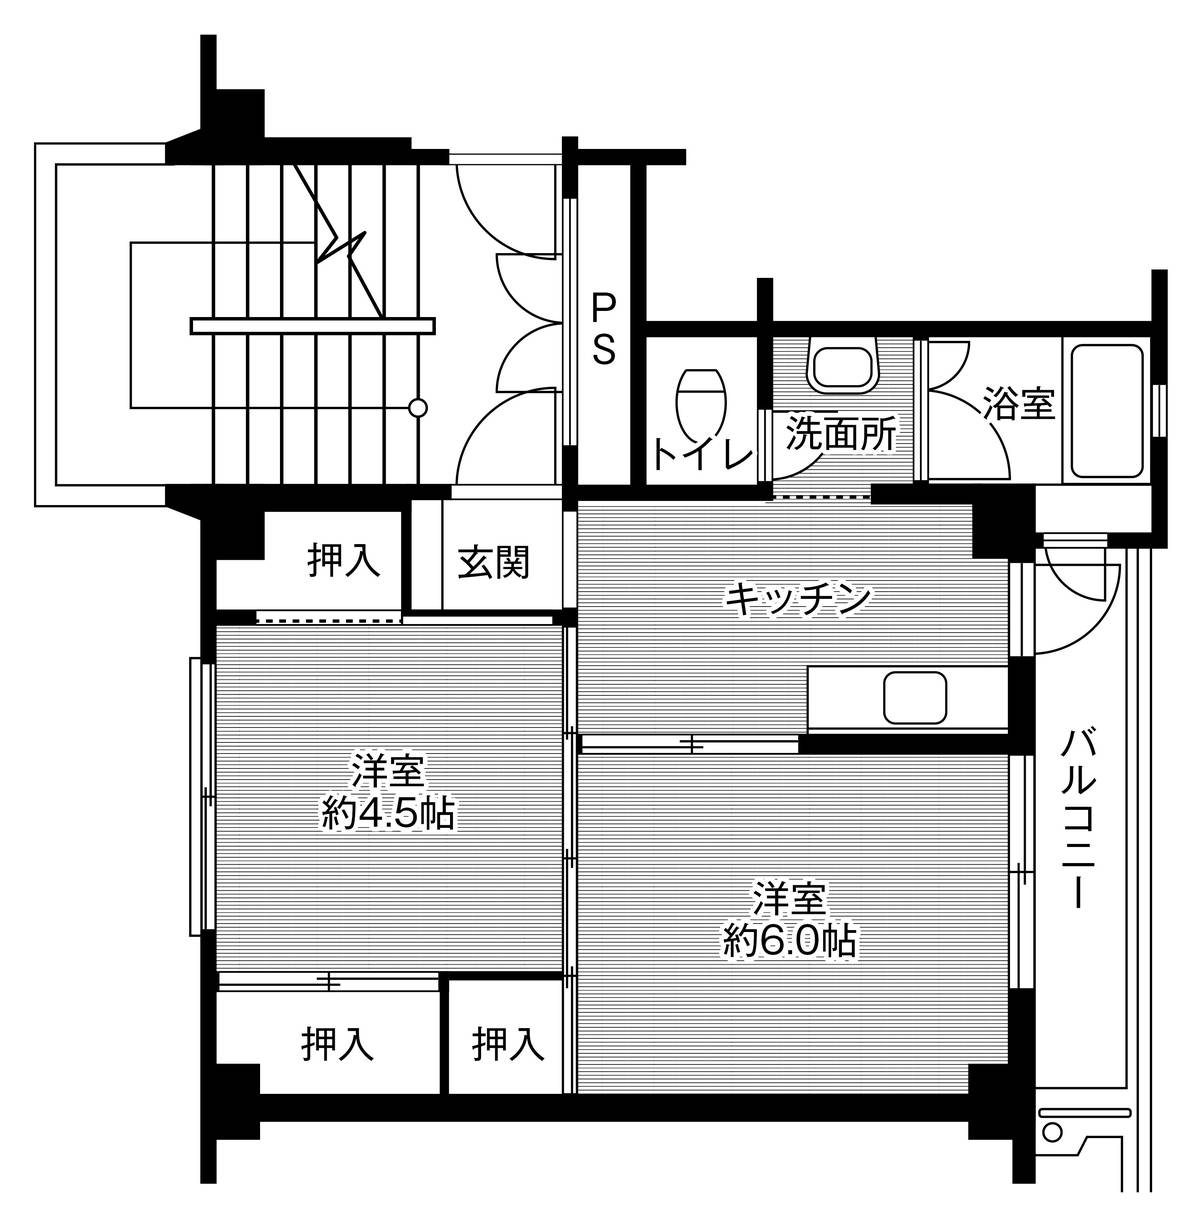 Sơ đồ phòng 2K của Village House Goshomiya ở Chikusei-shi